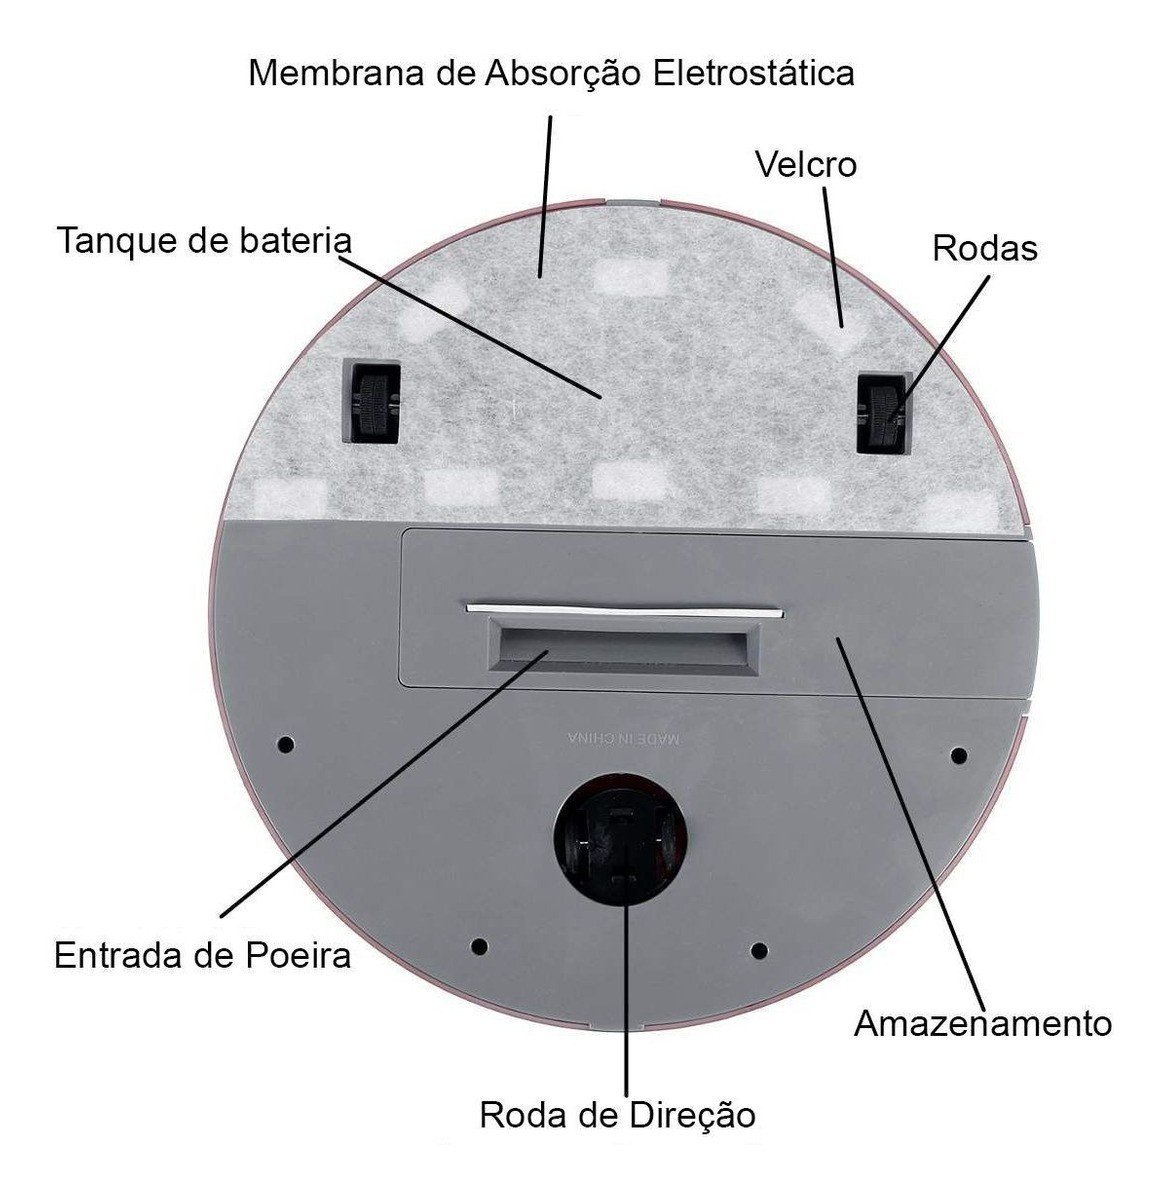 Robo Aspirador Faxina Passa Pano Limpeza Inteligente Sensor Obstaculos Anti Queda Sujeira Po Arruma - 10